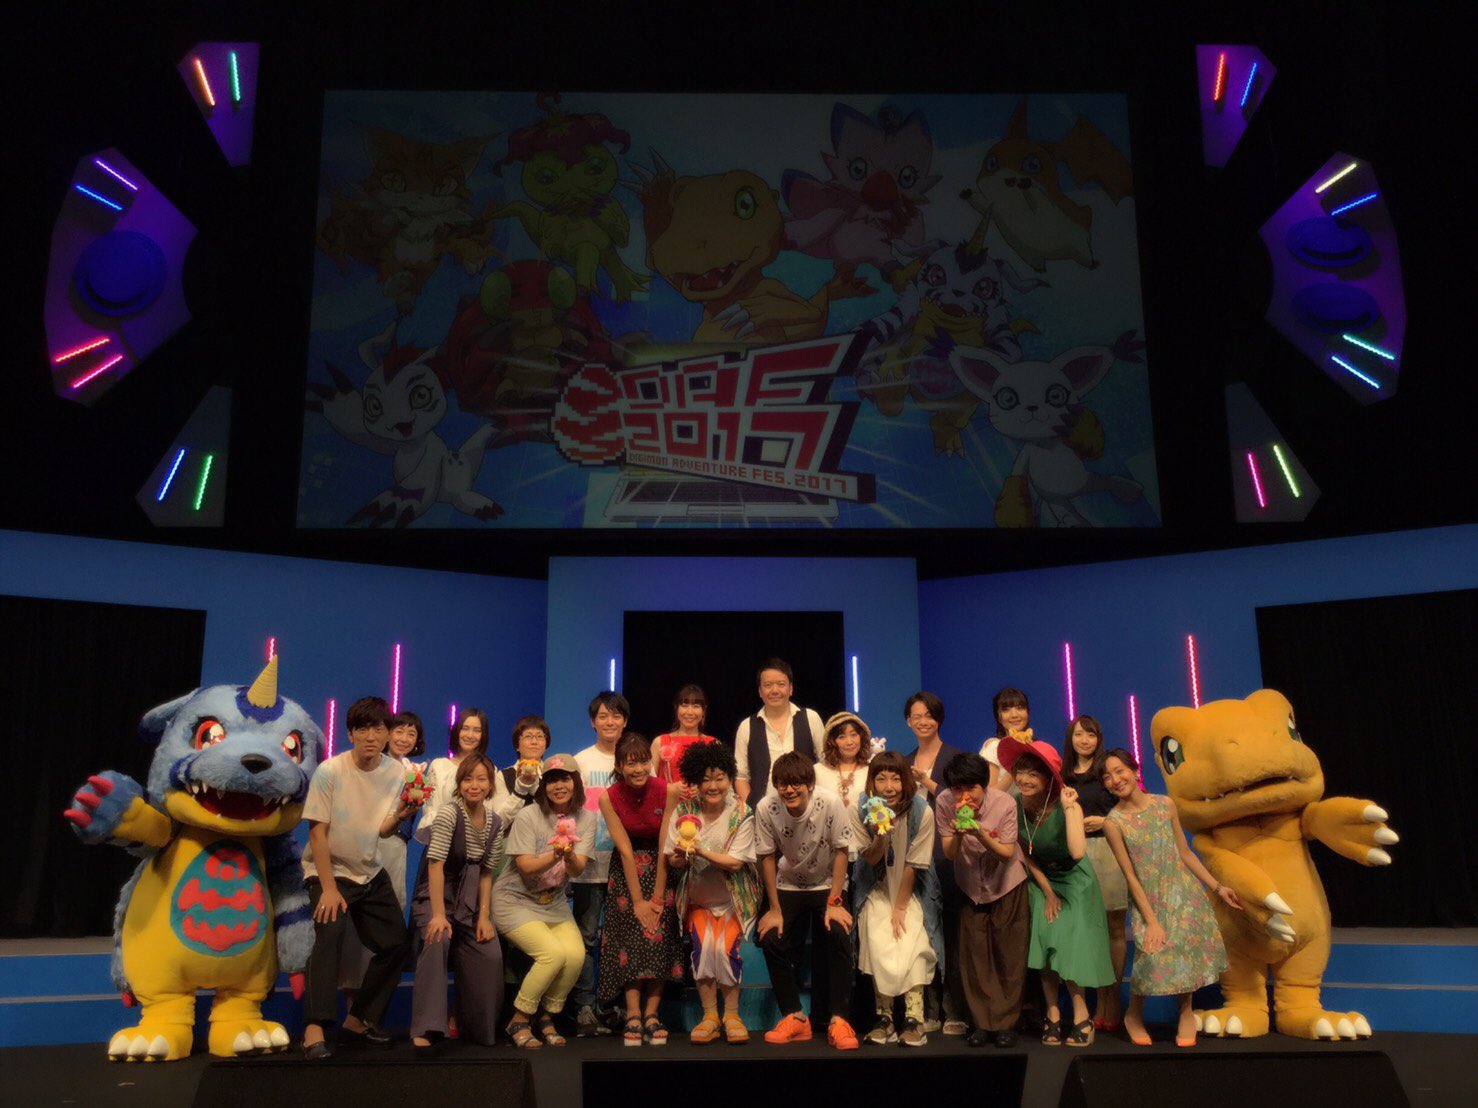 O Jogo da Invocação' e 'Digimon Adventure 02' estreiam nos cinemas